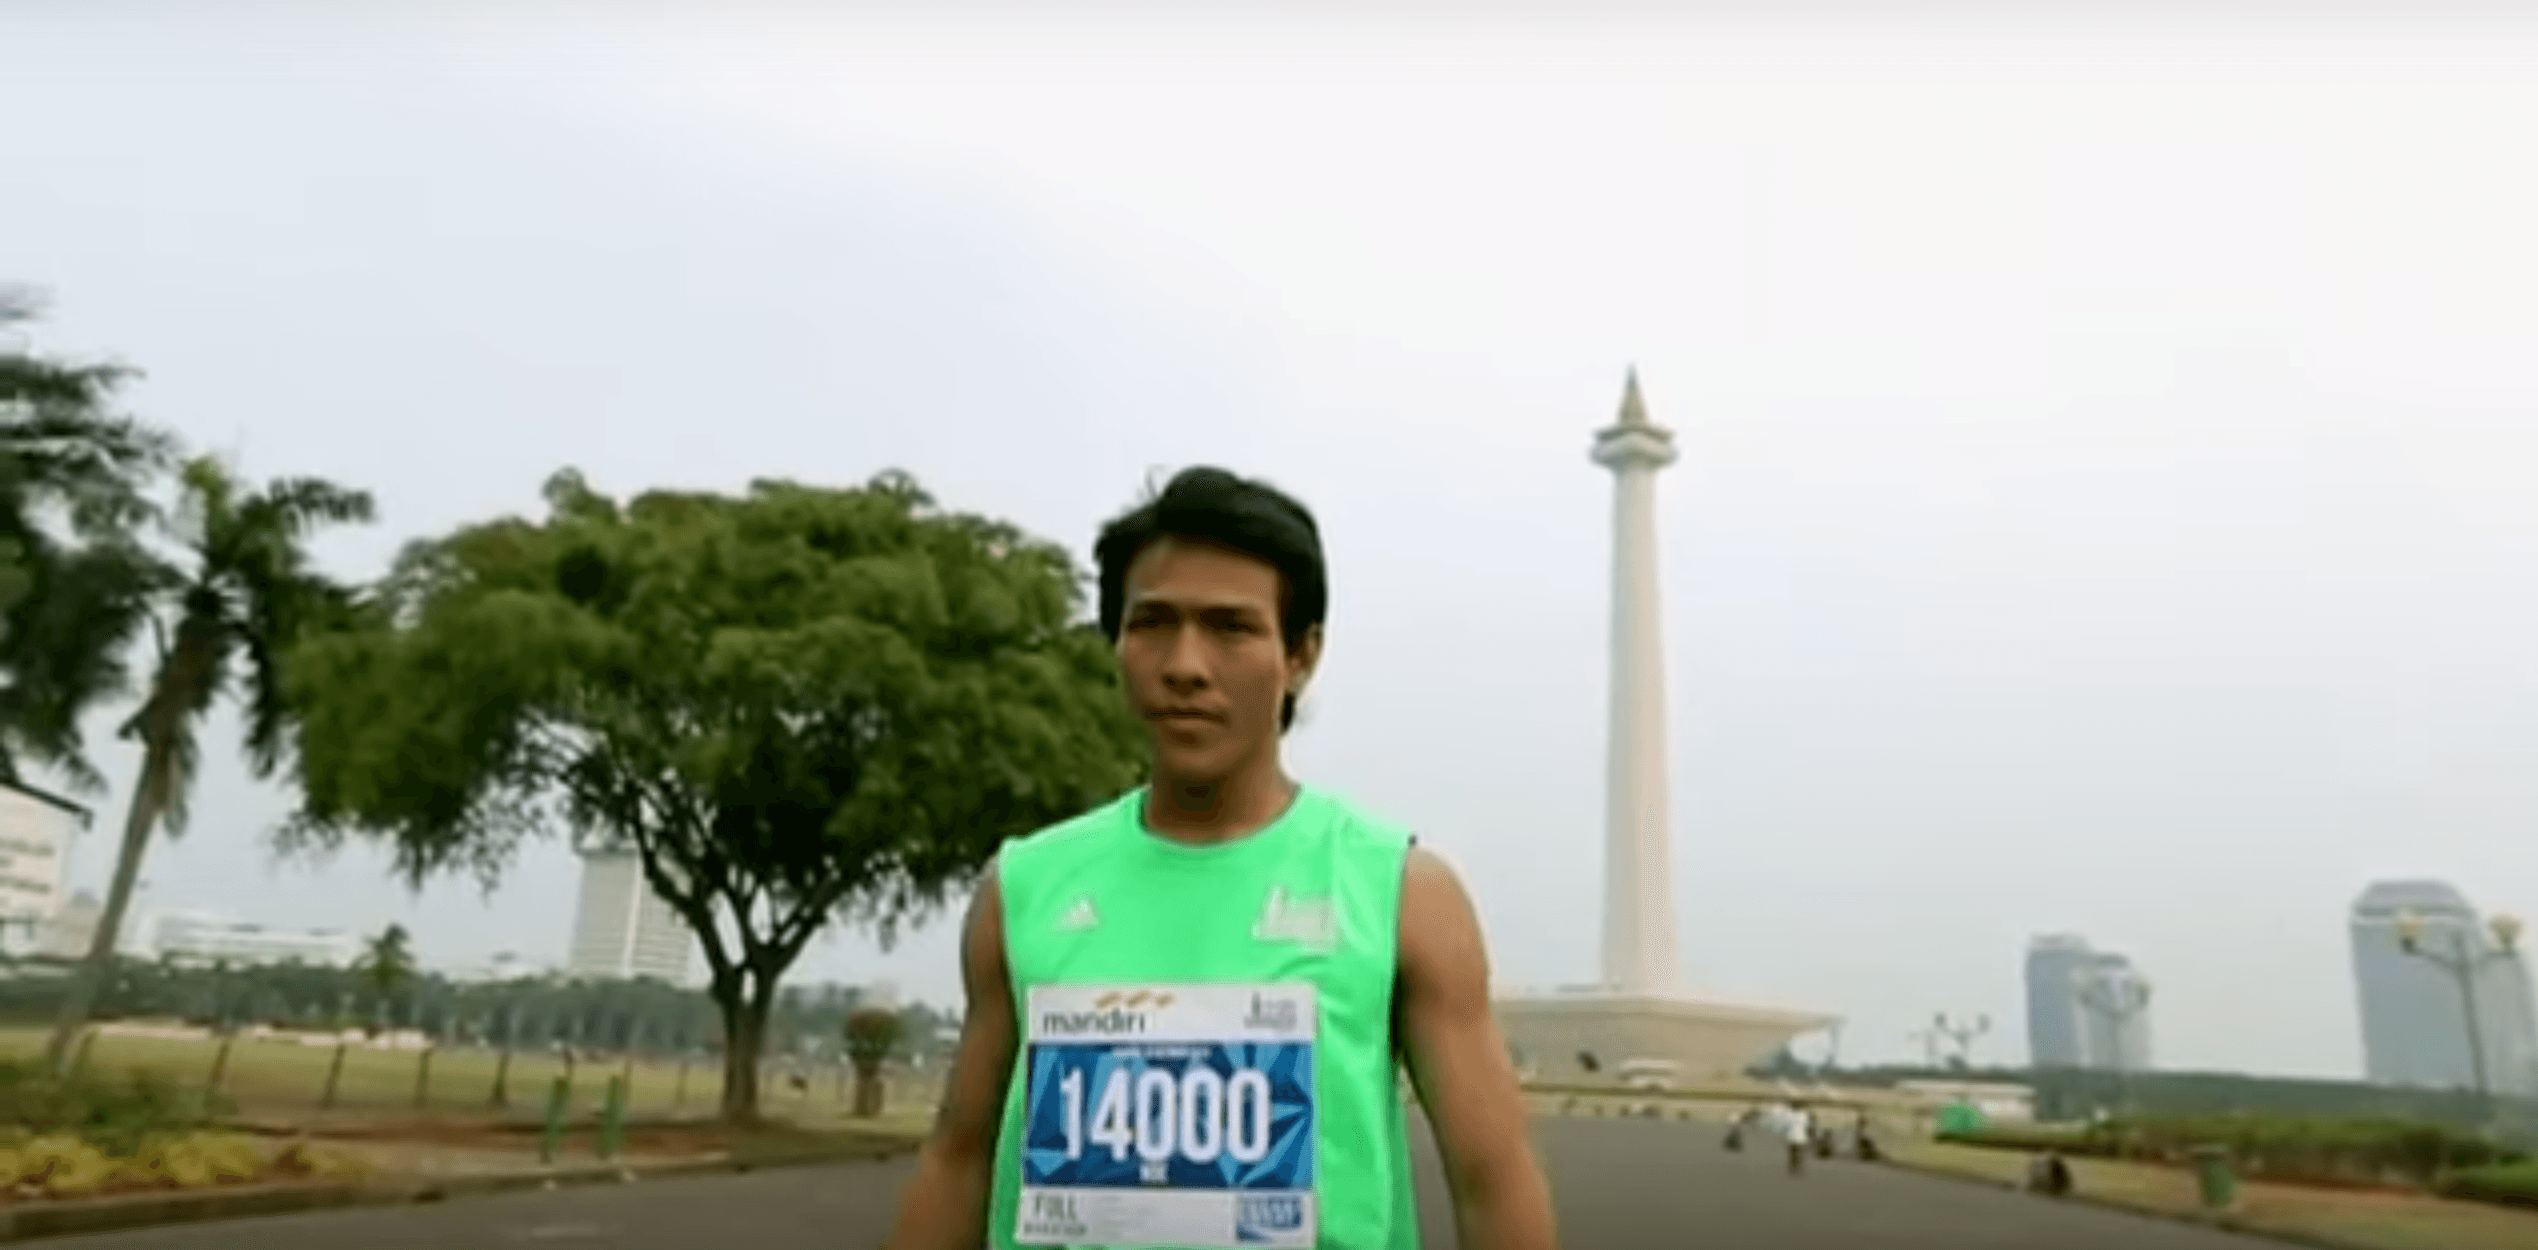 Siap berlari di Jakarta Marathon 2015 hari Minggu?